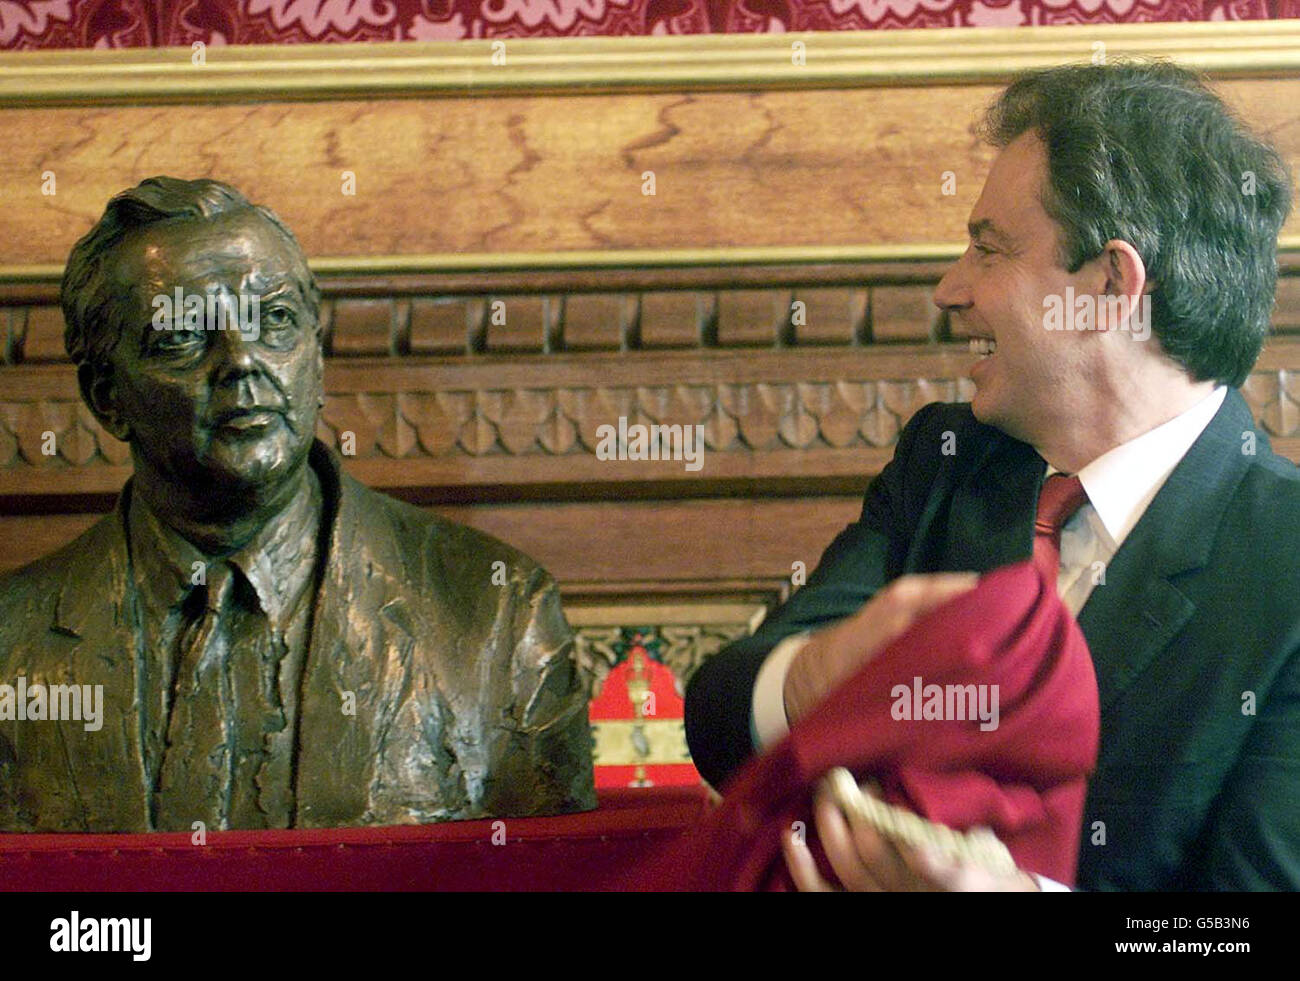 Der britische Premierminister Tony Blair enthüllt im Londoner Unterhaus eine Bronzebüste von Lord Wilson von Rievaulx, Labours dienstältestem Premierminister, bei einer Zeremonie, an der Lady Wilson und andere Mitglieder der Familie des verstorbenen Premierministers teilnahmen. *Harold Wilson, der mit 31 Jahren der jüngste Minister seit Pitt wurde, starb 1995 im Alter von 79 Jahren. Die Skulptur wird schließlich ihren Platz neben Gleichnissen anderer Premierminister des 20. Jahrhunderts in der Mitgliederlobby der Commons einnehmen. Stockfoto